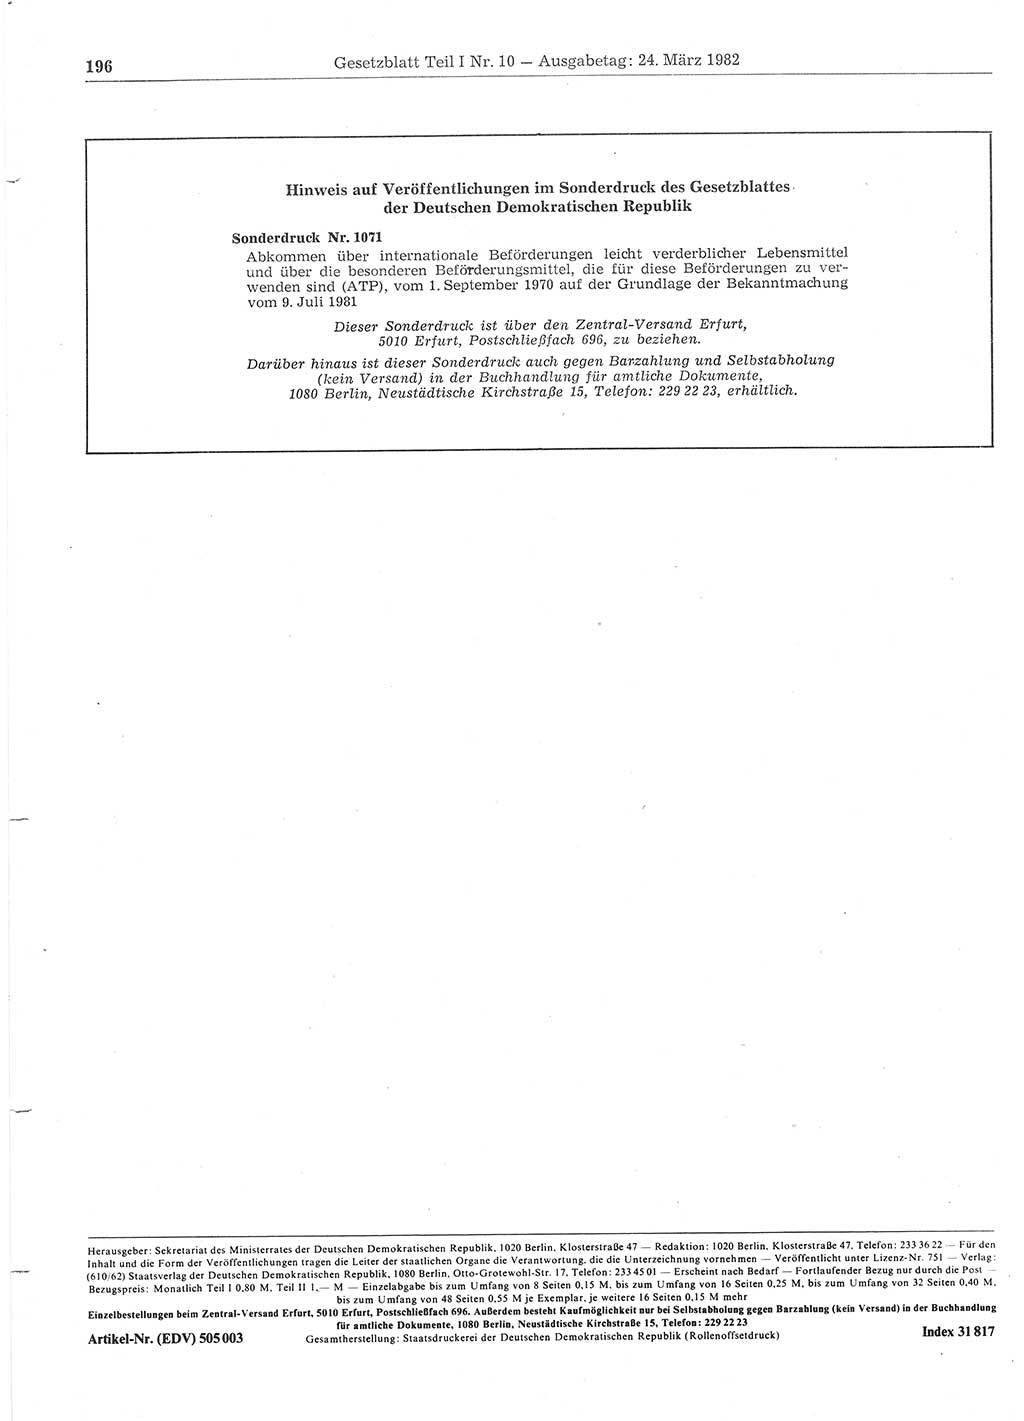 Gesetzblatt (GBl.) der Deutschen Demokratischen Republik (DDR) Teil Ⅰ 1982, Seite 196 (GBl. DDR Ⅰ 1982, S. 196)